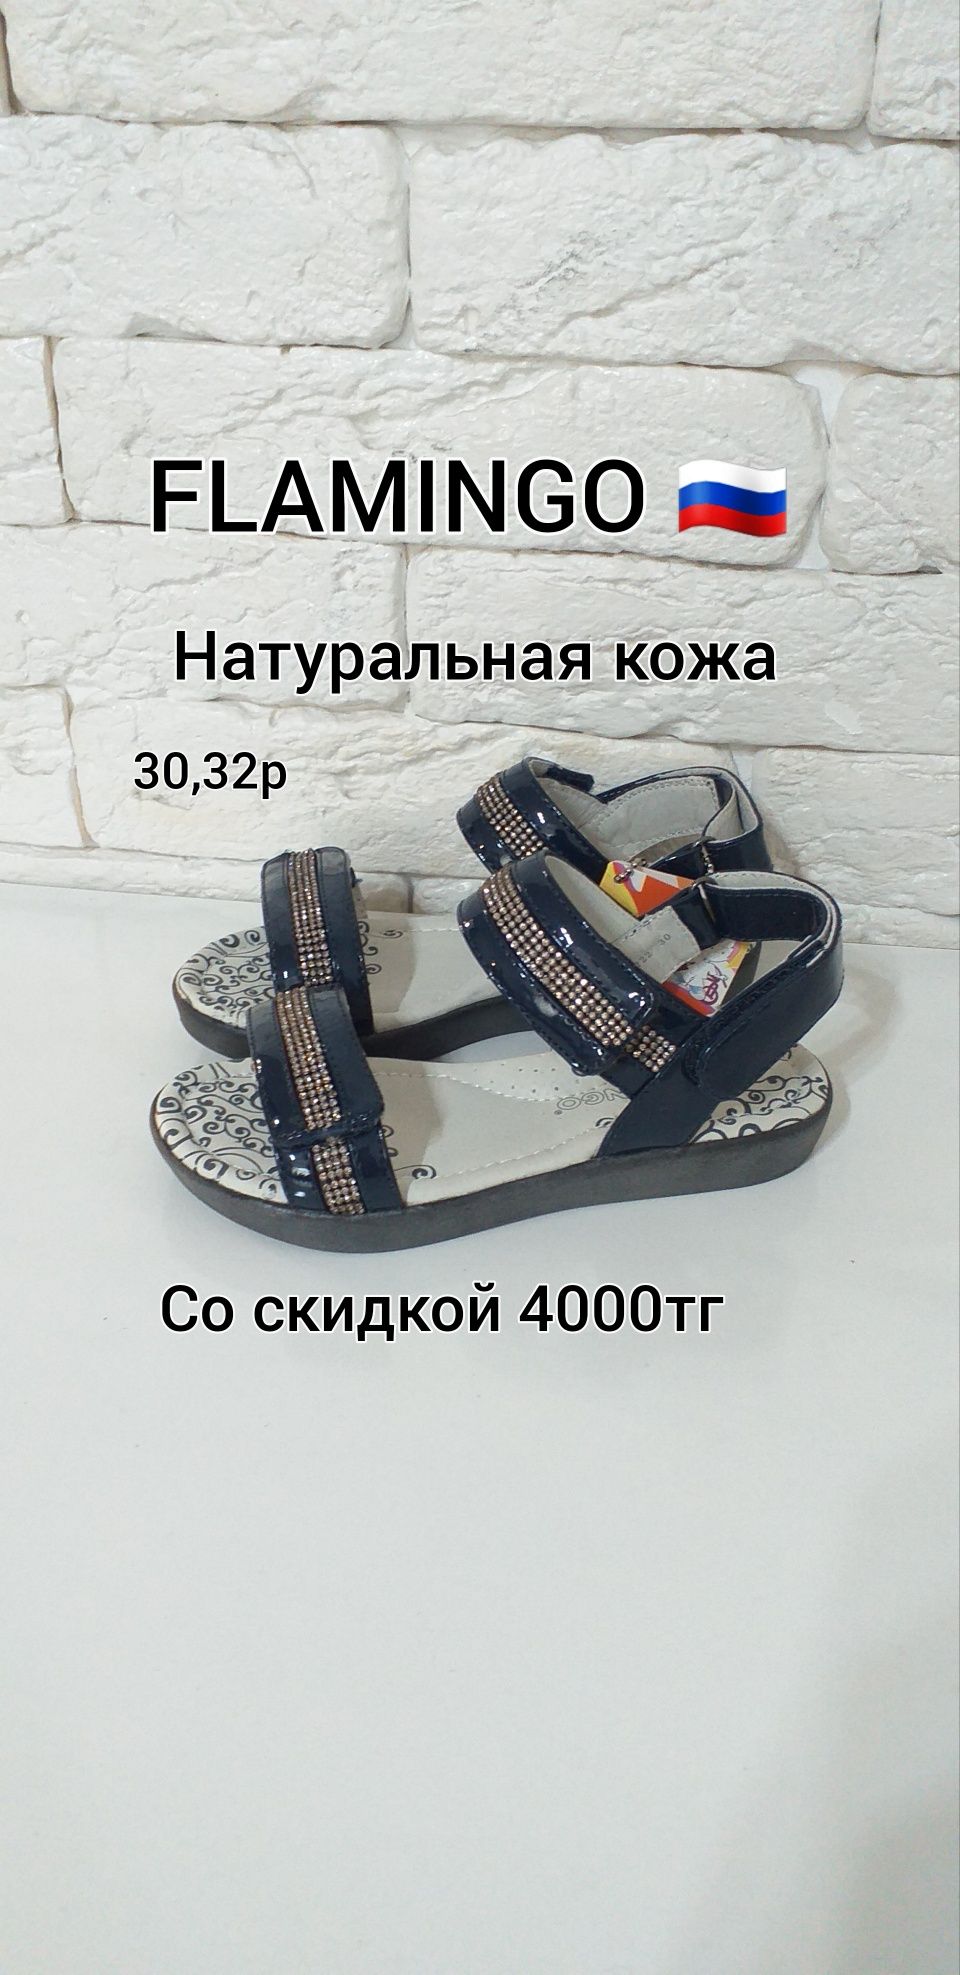 РАСПРОДАЖА! Сандалии ТМ "Flamingo", Россия. Алматы обувь Фламинго.